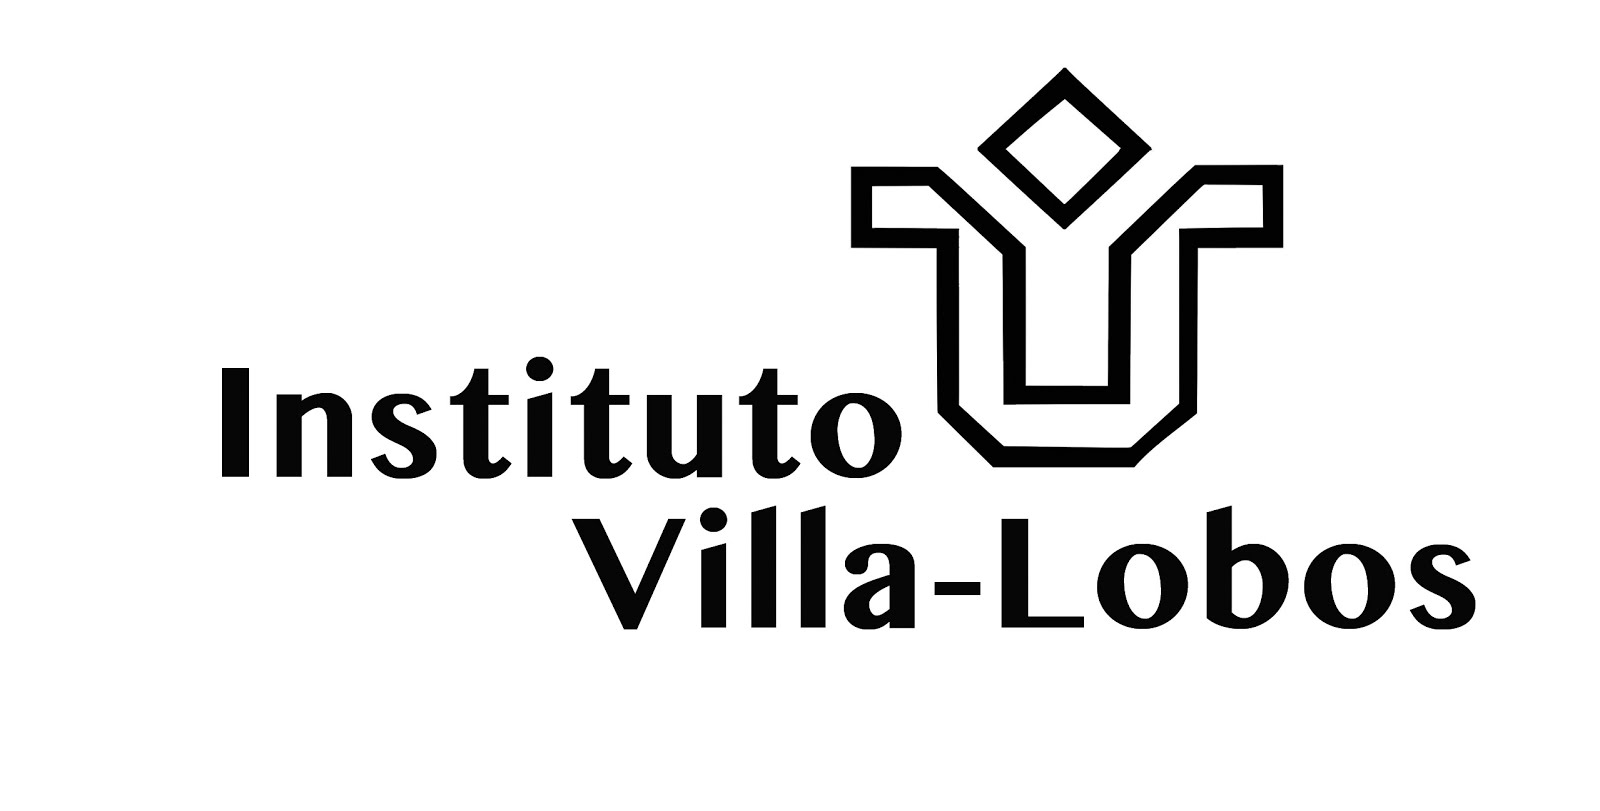 Instituto Villa-Lobos